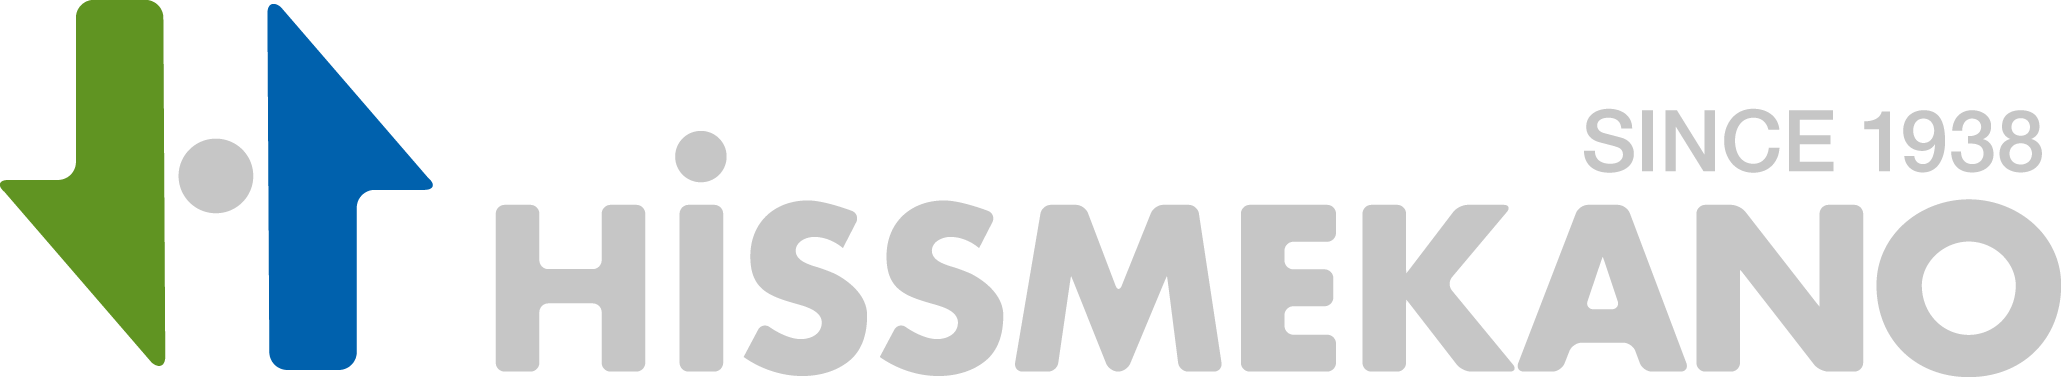 Hissmekano logo